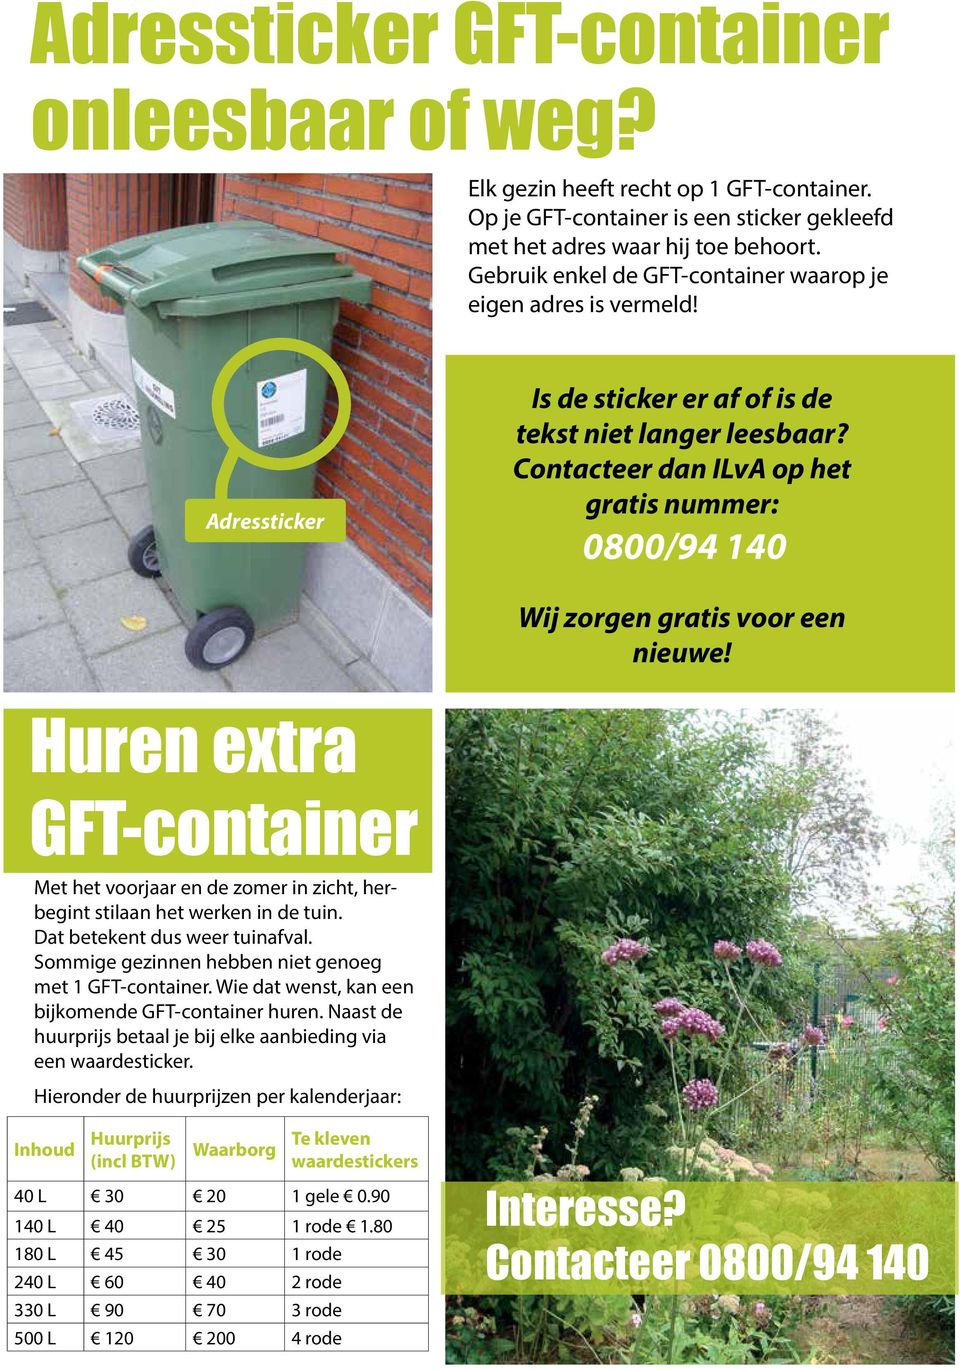 Contacteer dan ILvA op het gratis nummer: 0800/94 140 Wij zorgen gratis voor een nieuwe! Huren extra GFT-container Met het voorjaar en de zomer in zicht, herbegint stilaan het werken in de tuin.